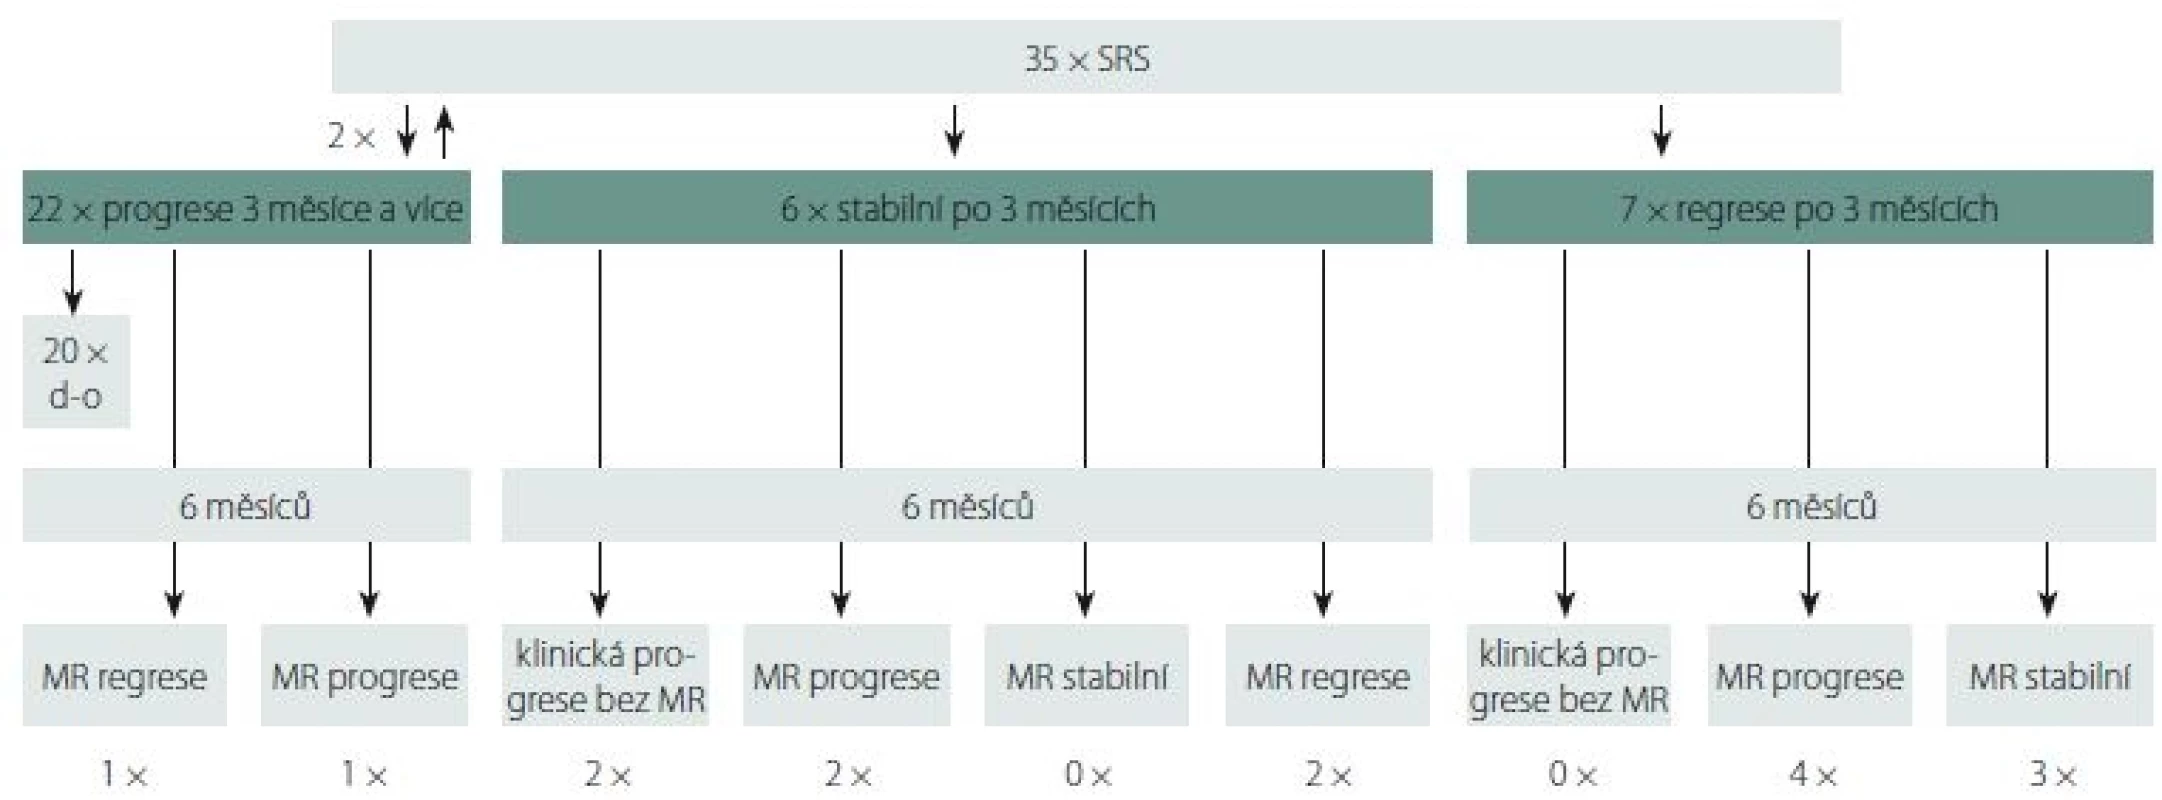 Vývoj ozářených ložisek GBM po 3 a 6 měsících po SRS.<br>
d-o – počet pacientů po 3. měsíci graficky nevyšetřovaných; GBM – multiformní glioblastom; SRS – stereotaktická radiochirurgie<br>
Fig. 1. Radiologic follow-up of GBM lesions 3 and 6 months after SRS.<br>
d-o – number of patients with no radiologic control after 3 months; GBM – glioblastoma multiforme; SRS – stereotactic radiosurgery